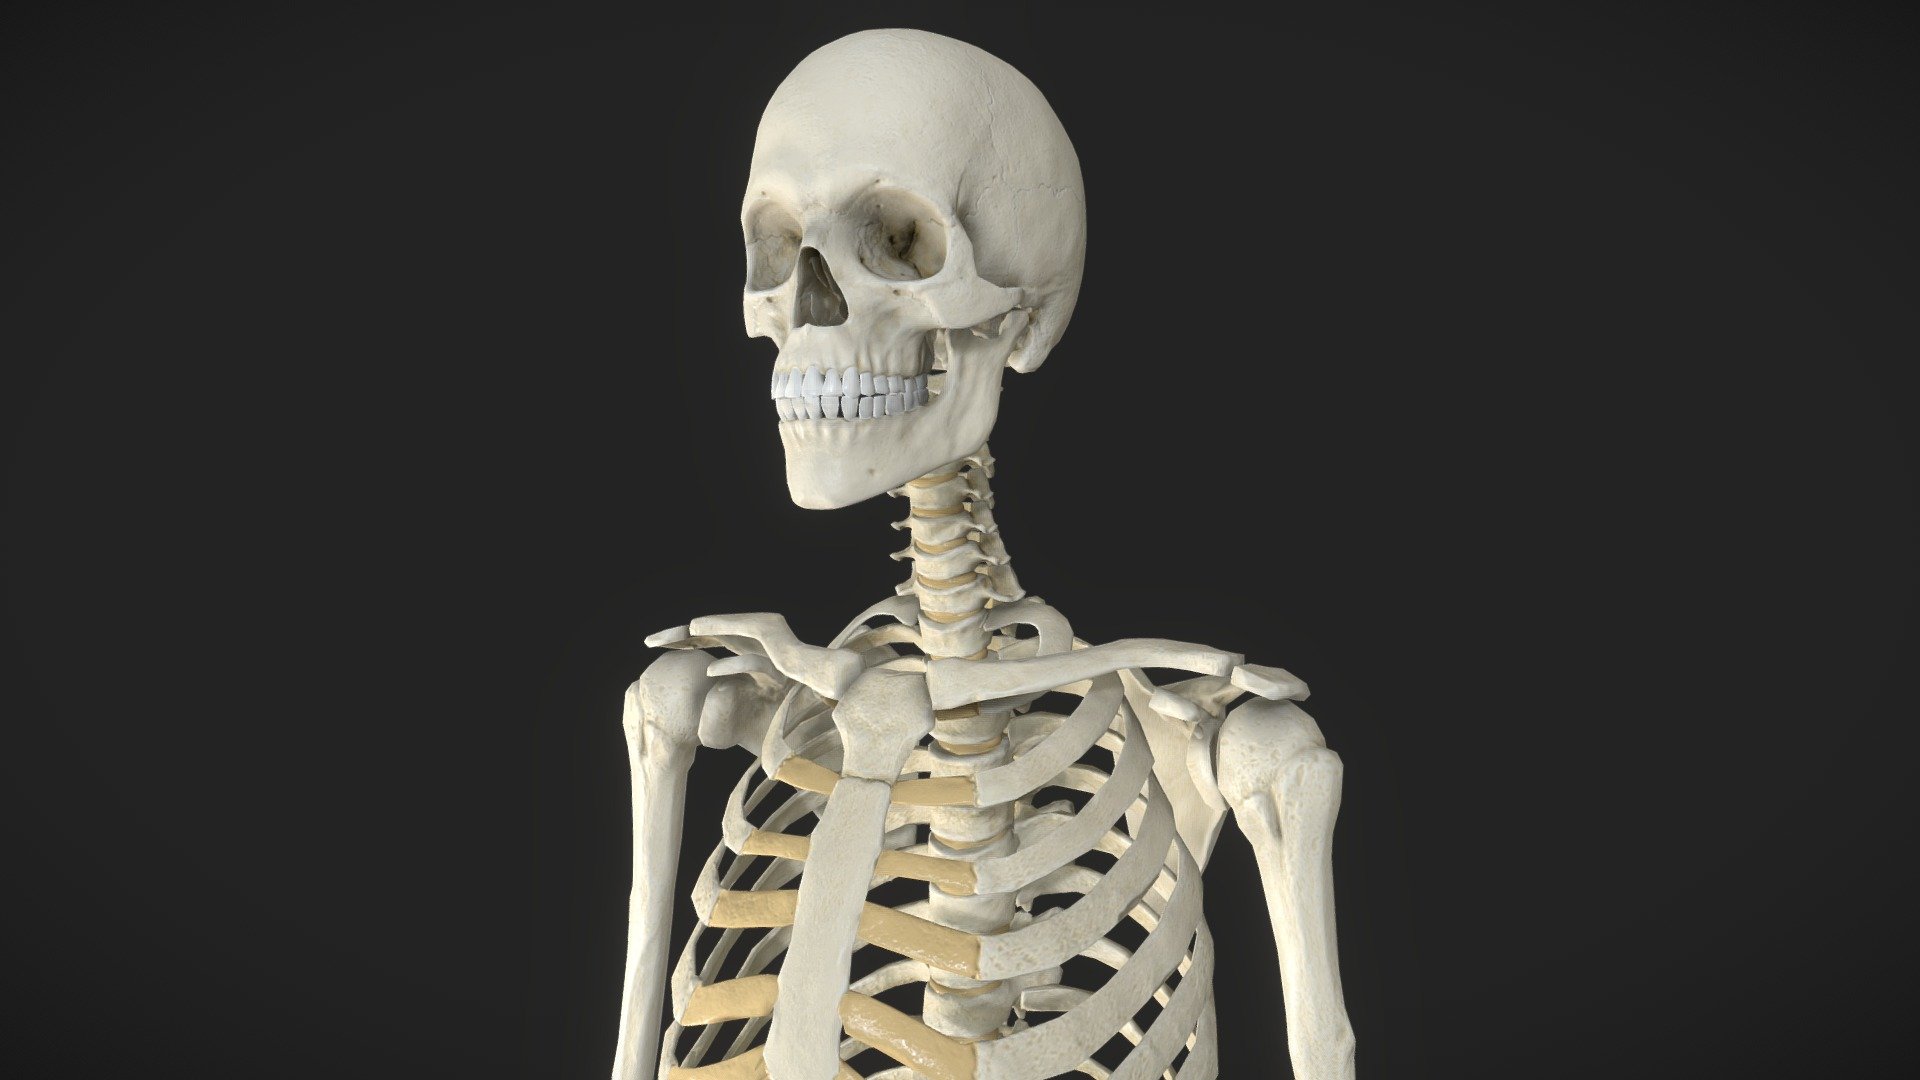 Скелет человека анатомия